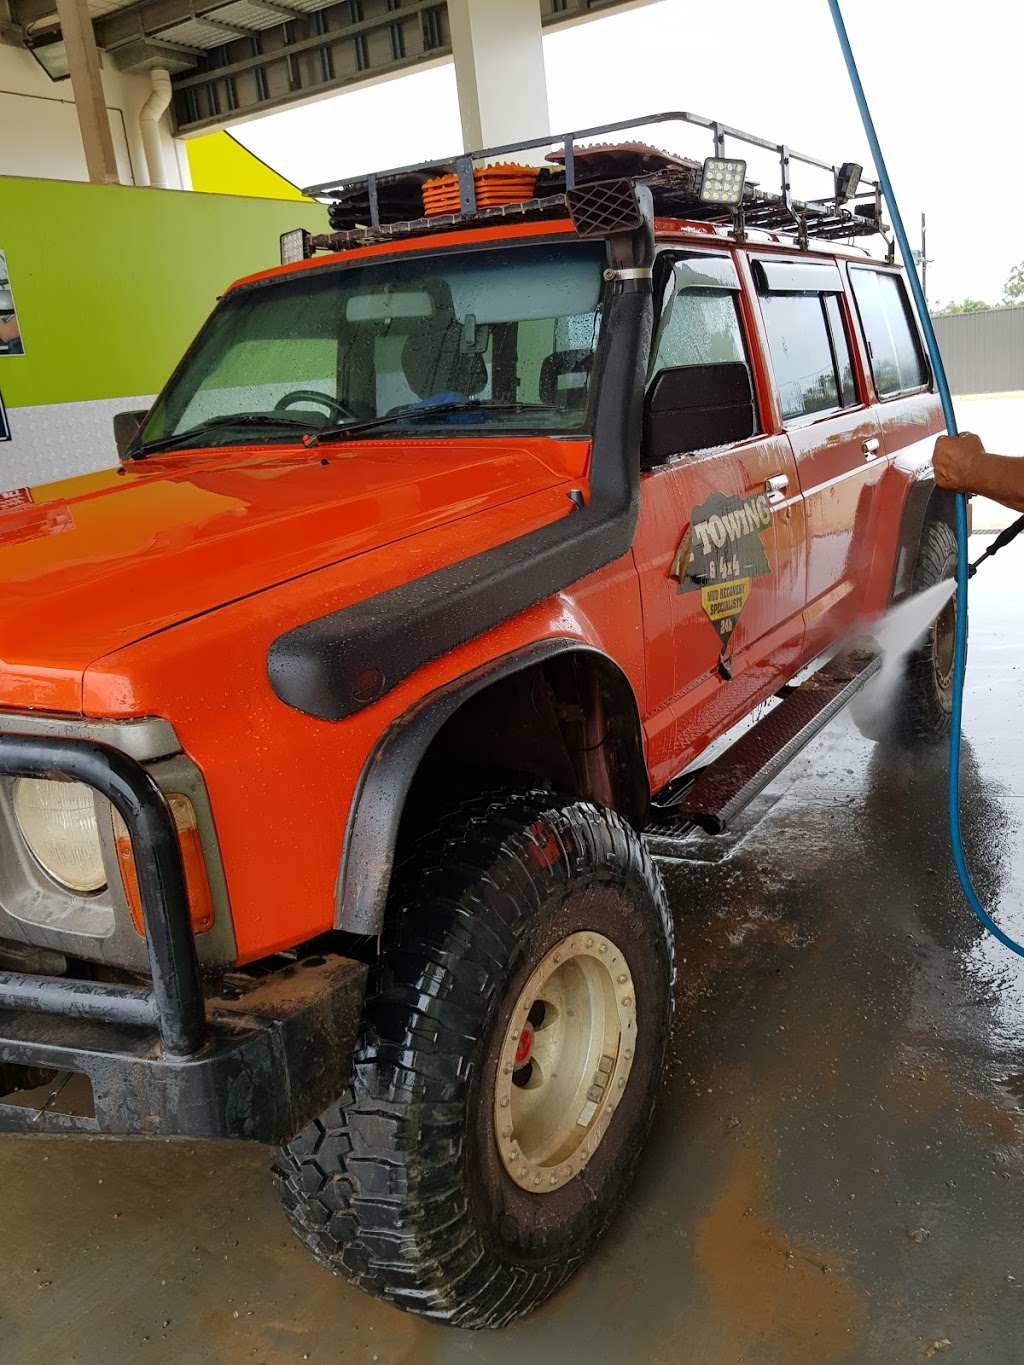 Wash N Go Car Wash | 19 Fowlestone Rd, Tivendale NT 0822, Australia | Phone: 0499 995 558